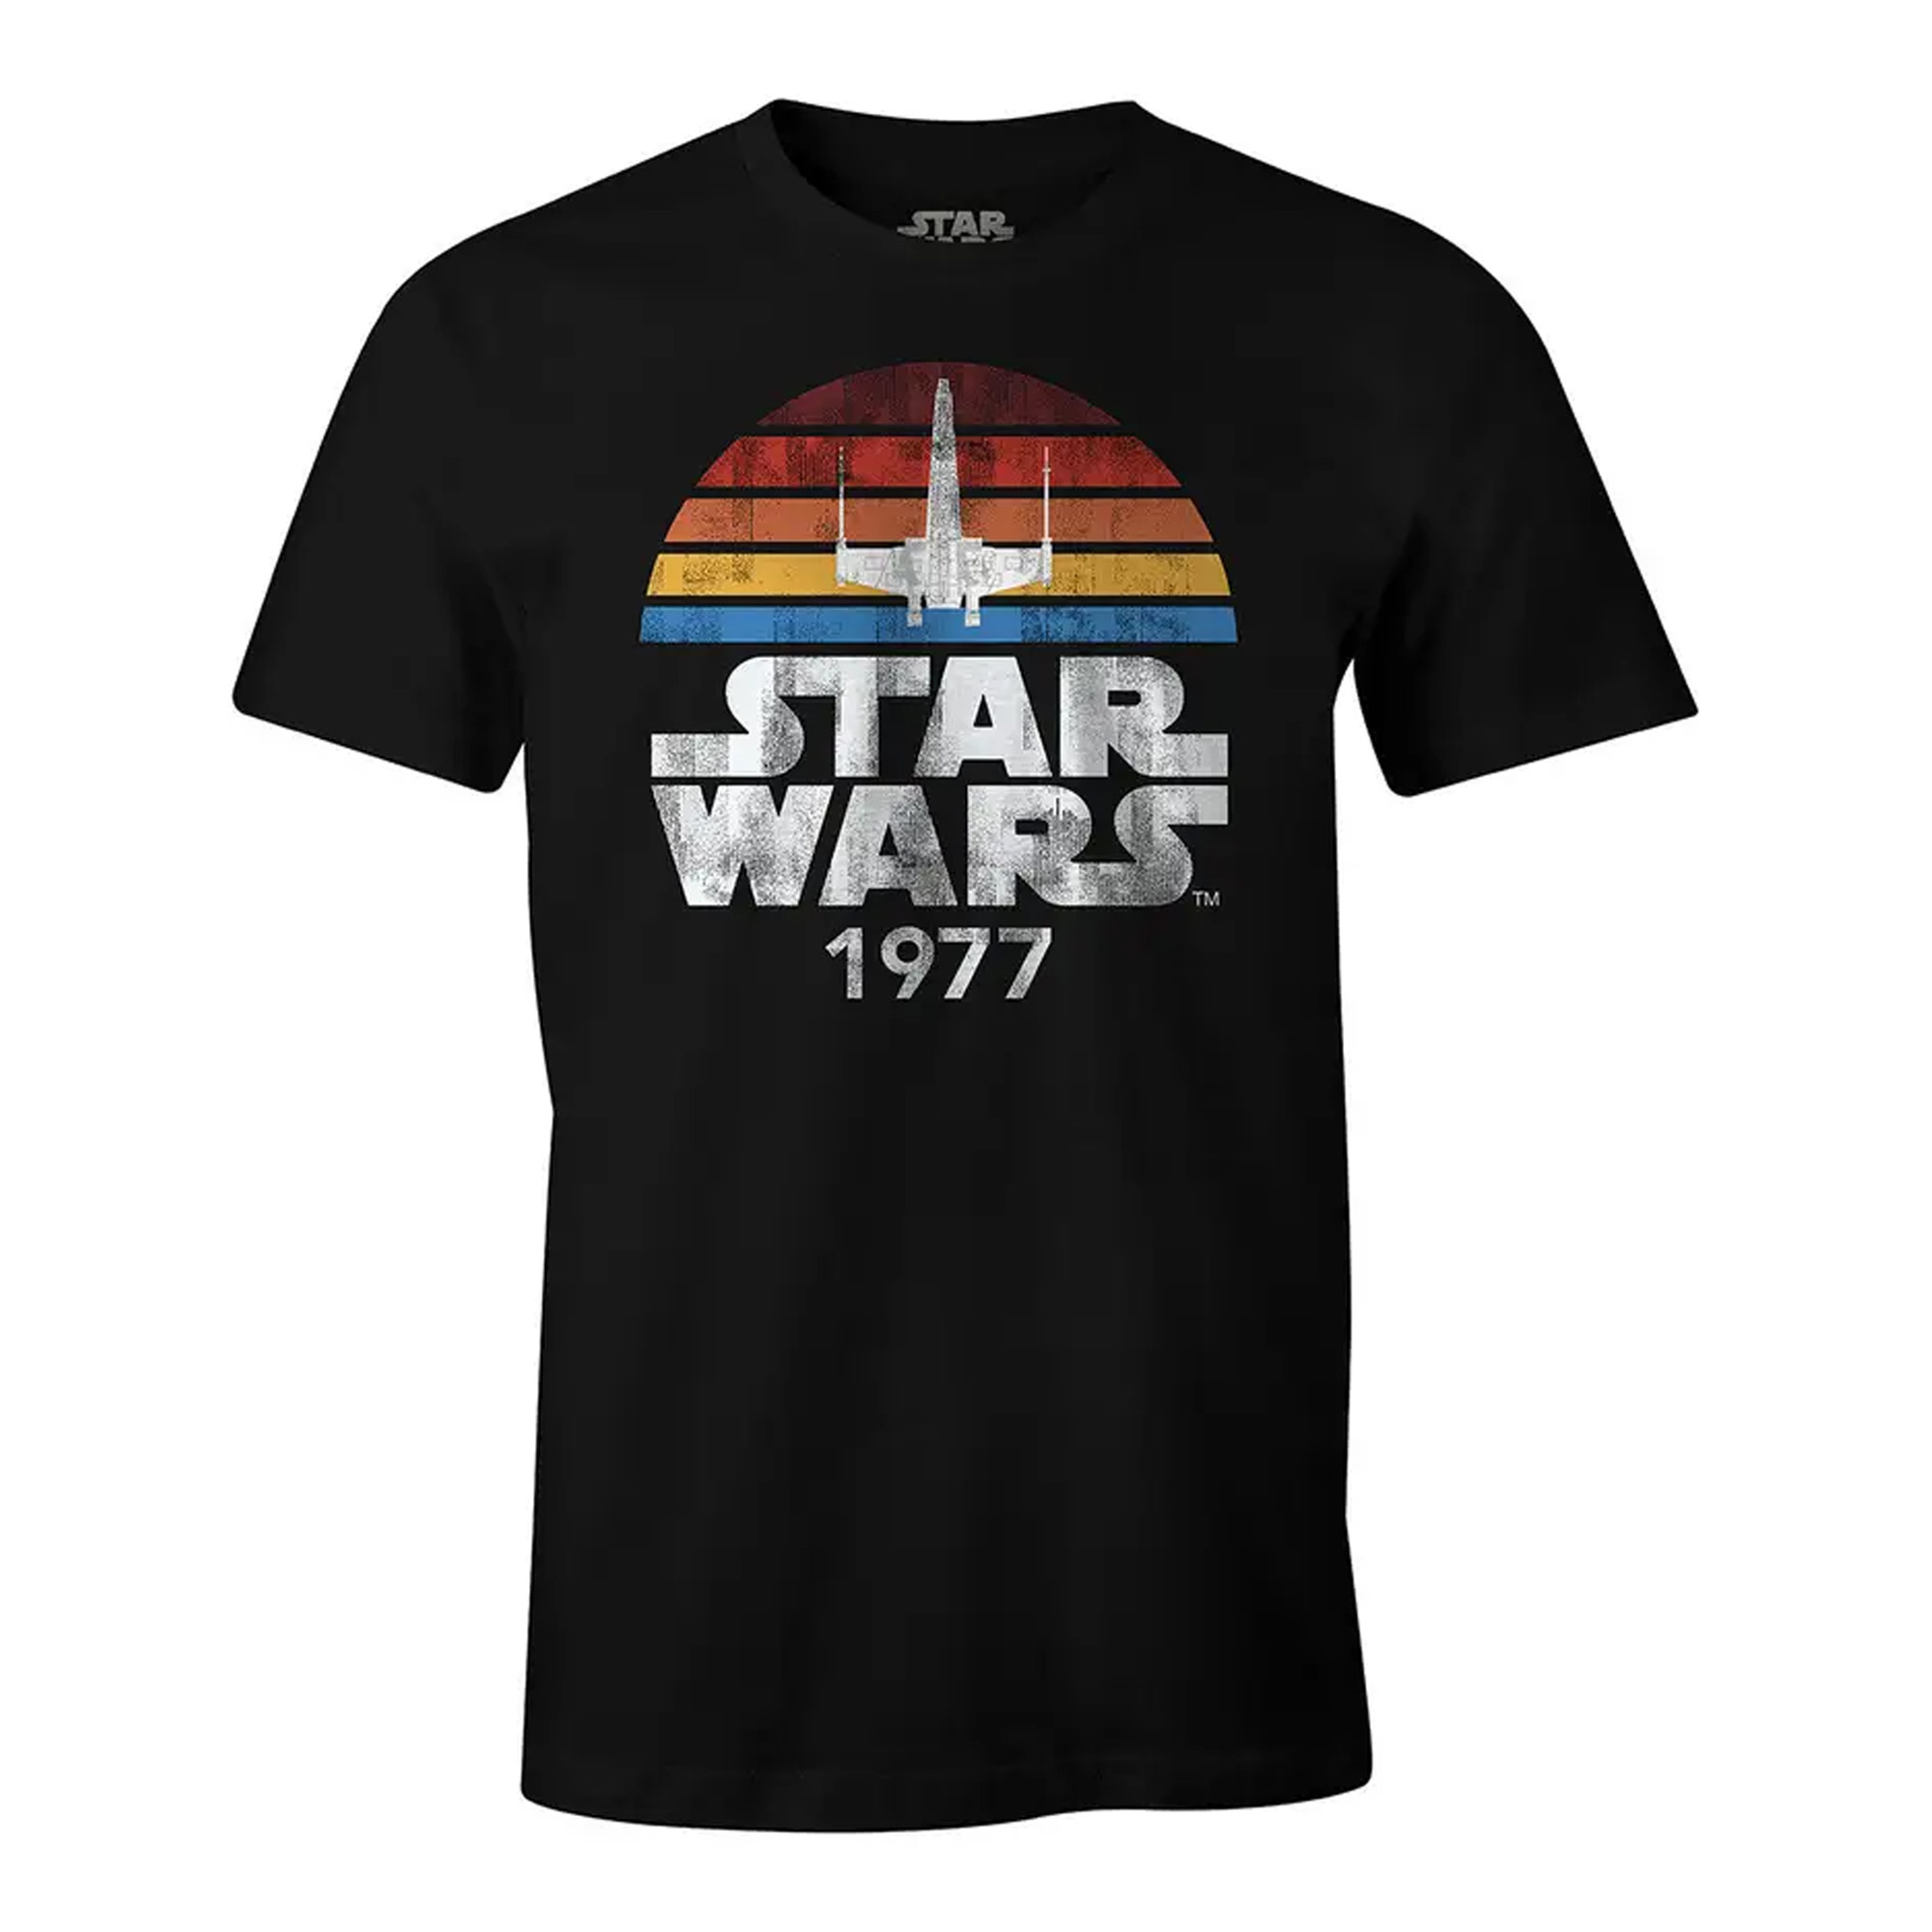 Star Wars 1977 T-Shirt - Star Wars